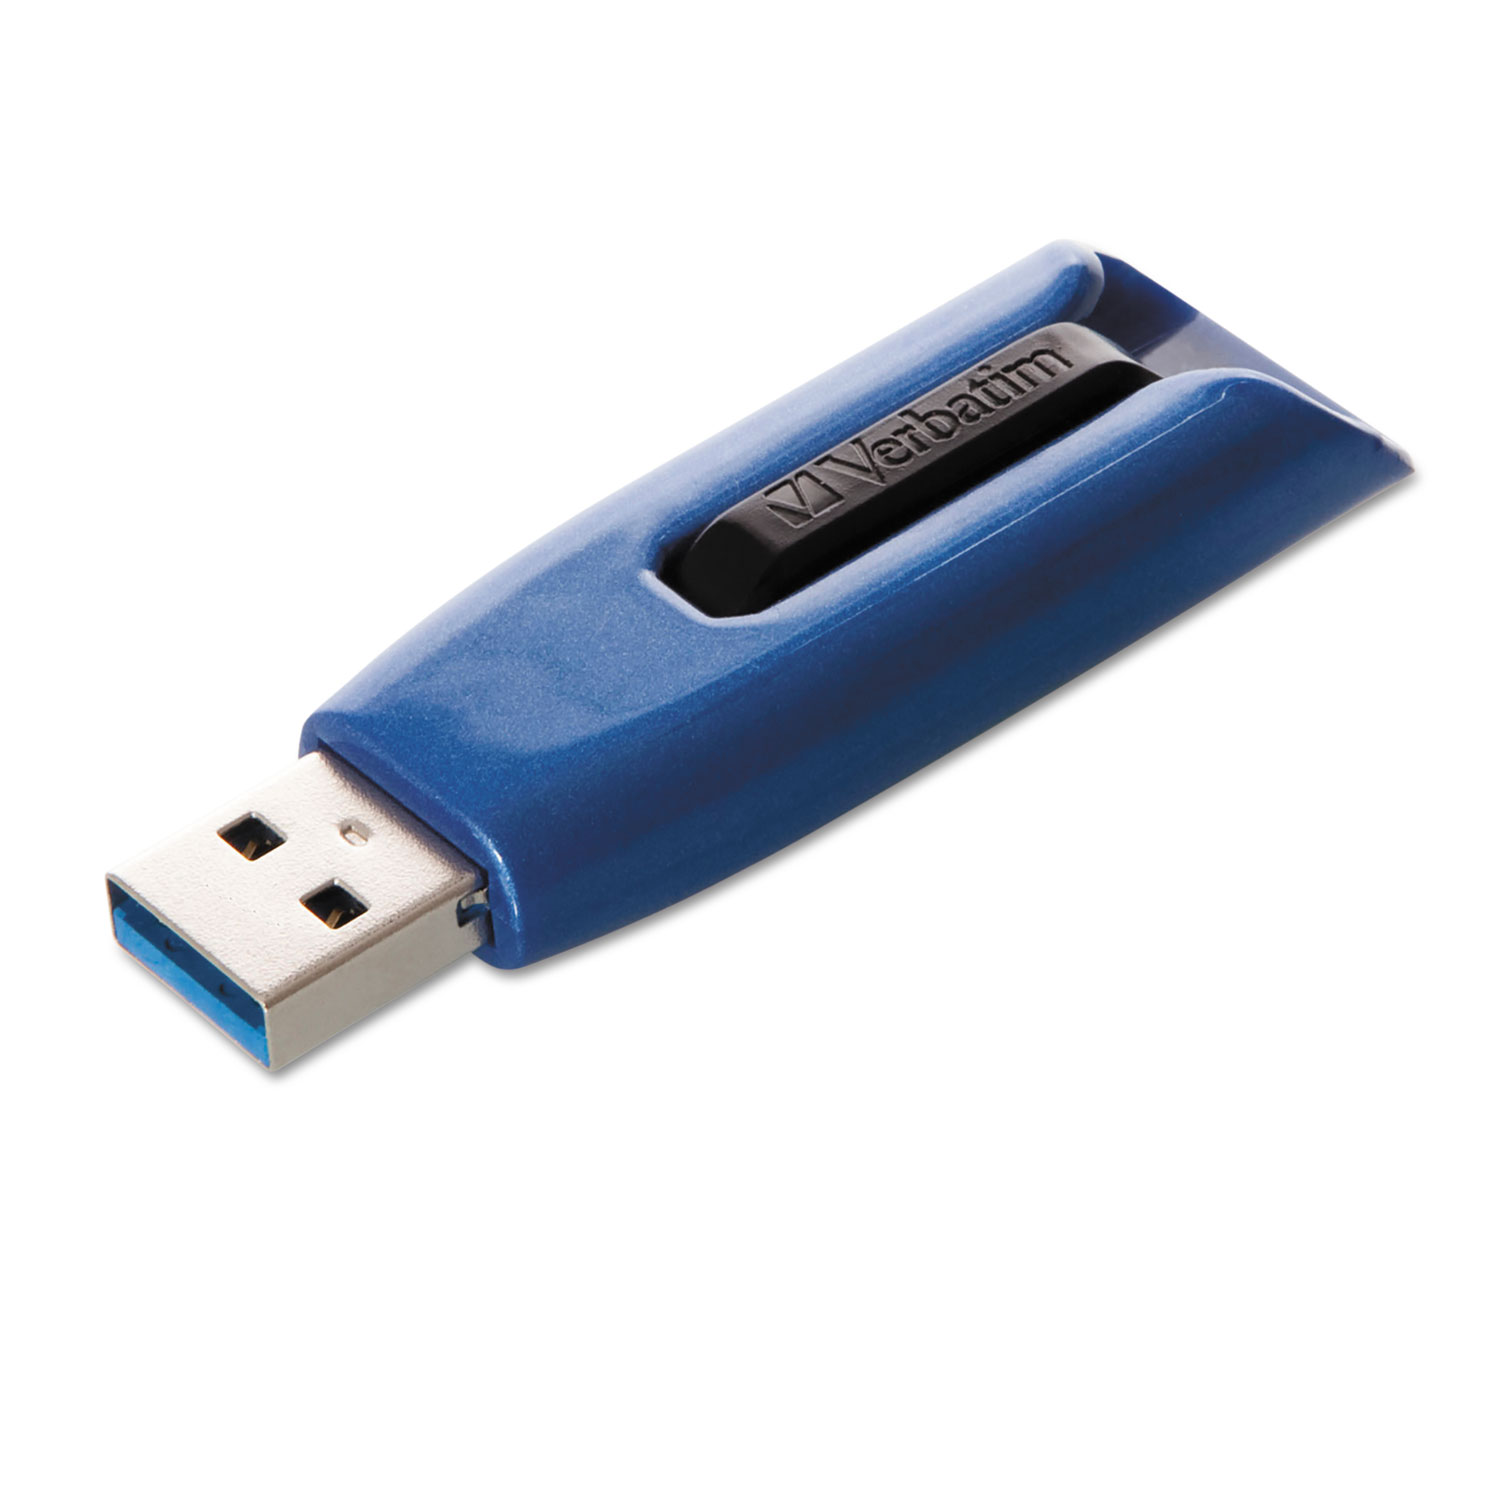 V3 Max USB 3.0 Drive, 128GB, Blue